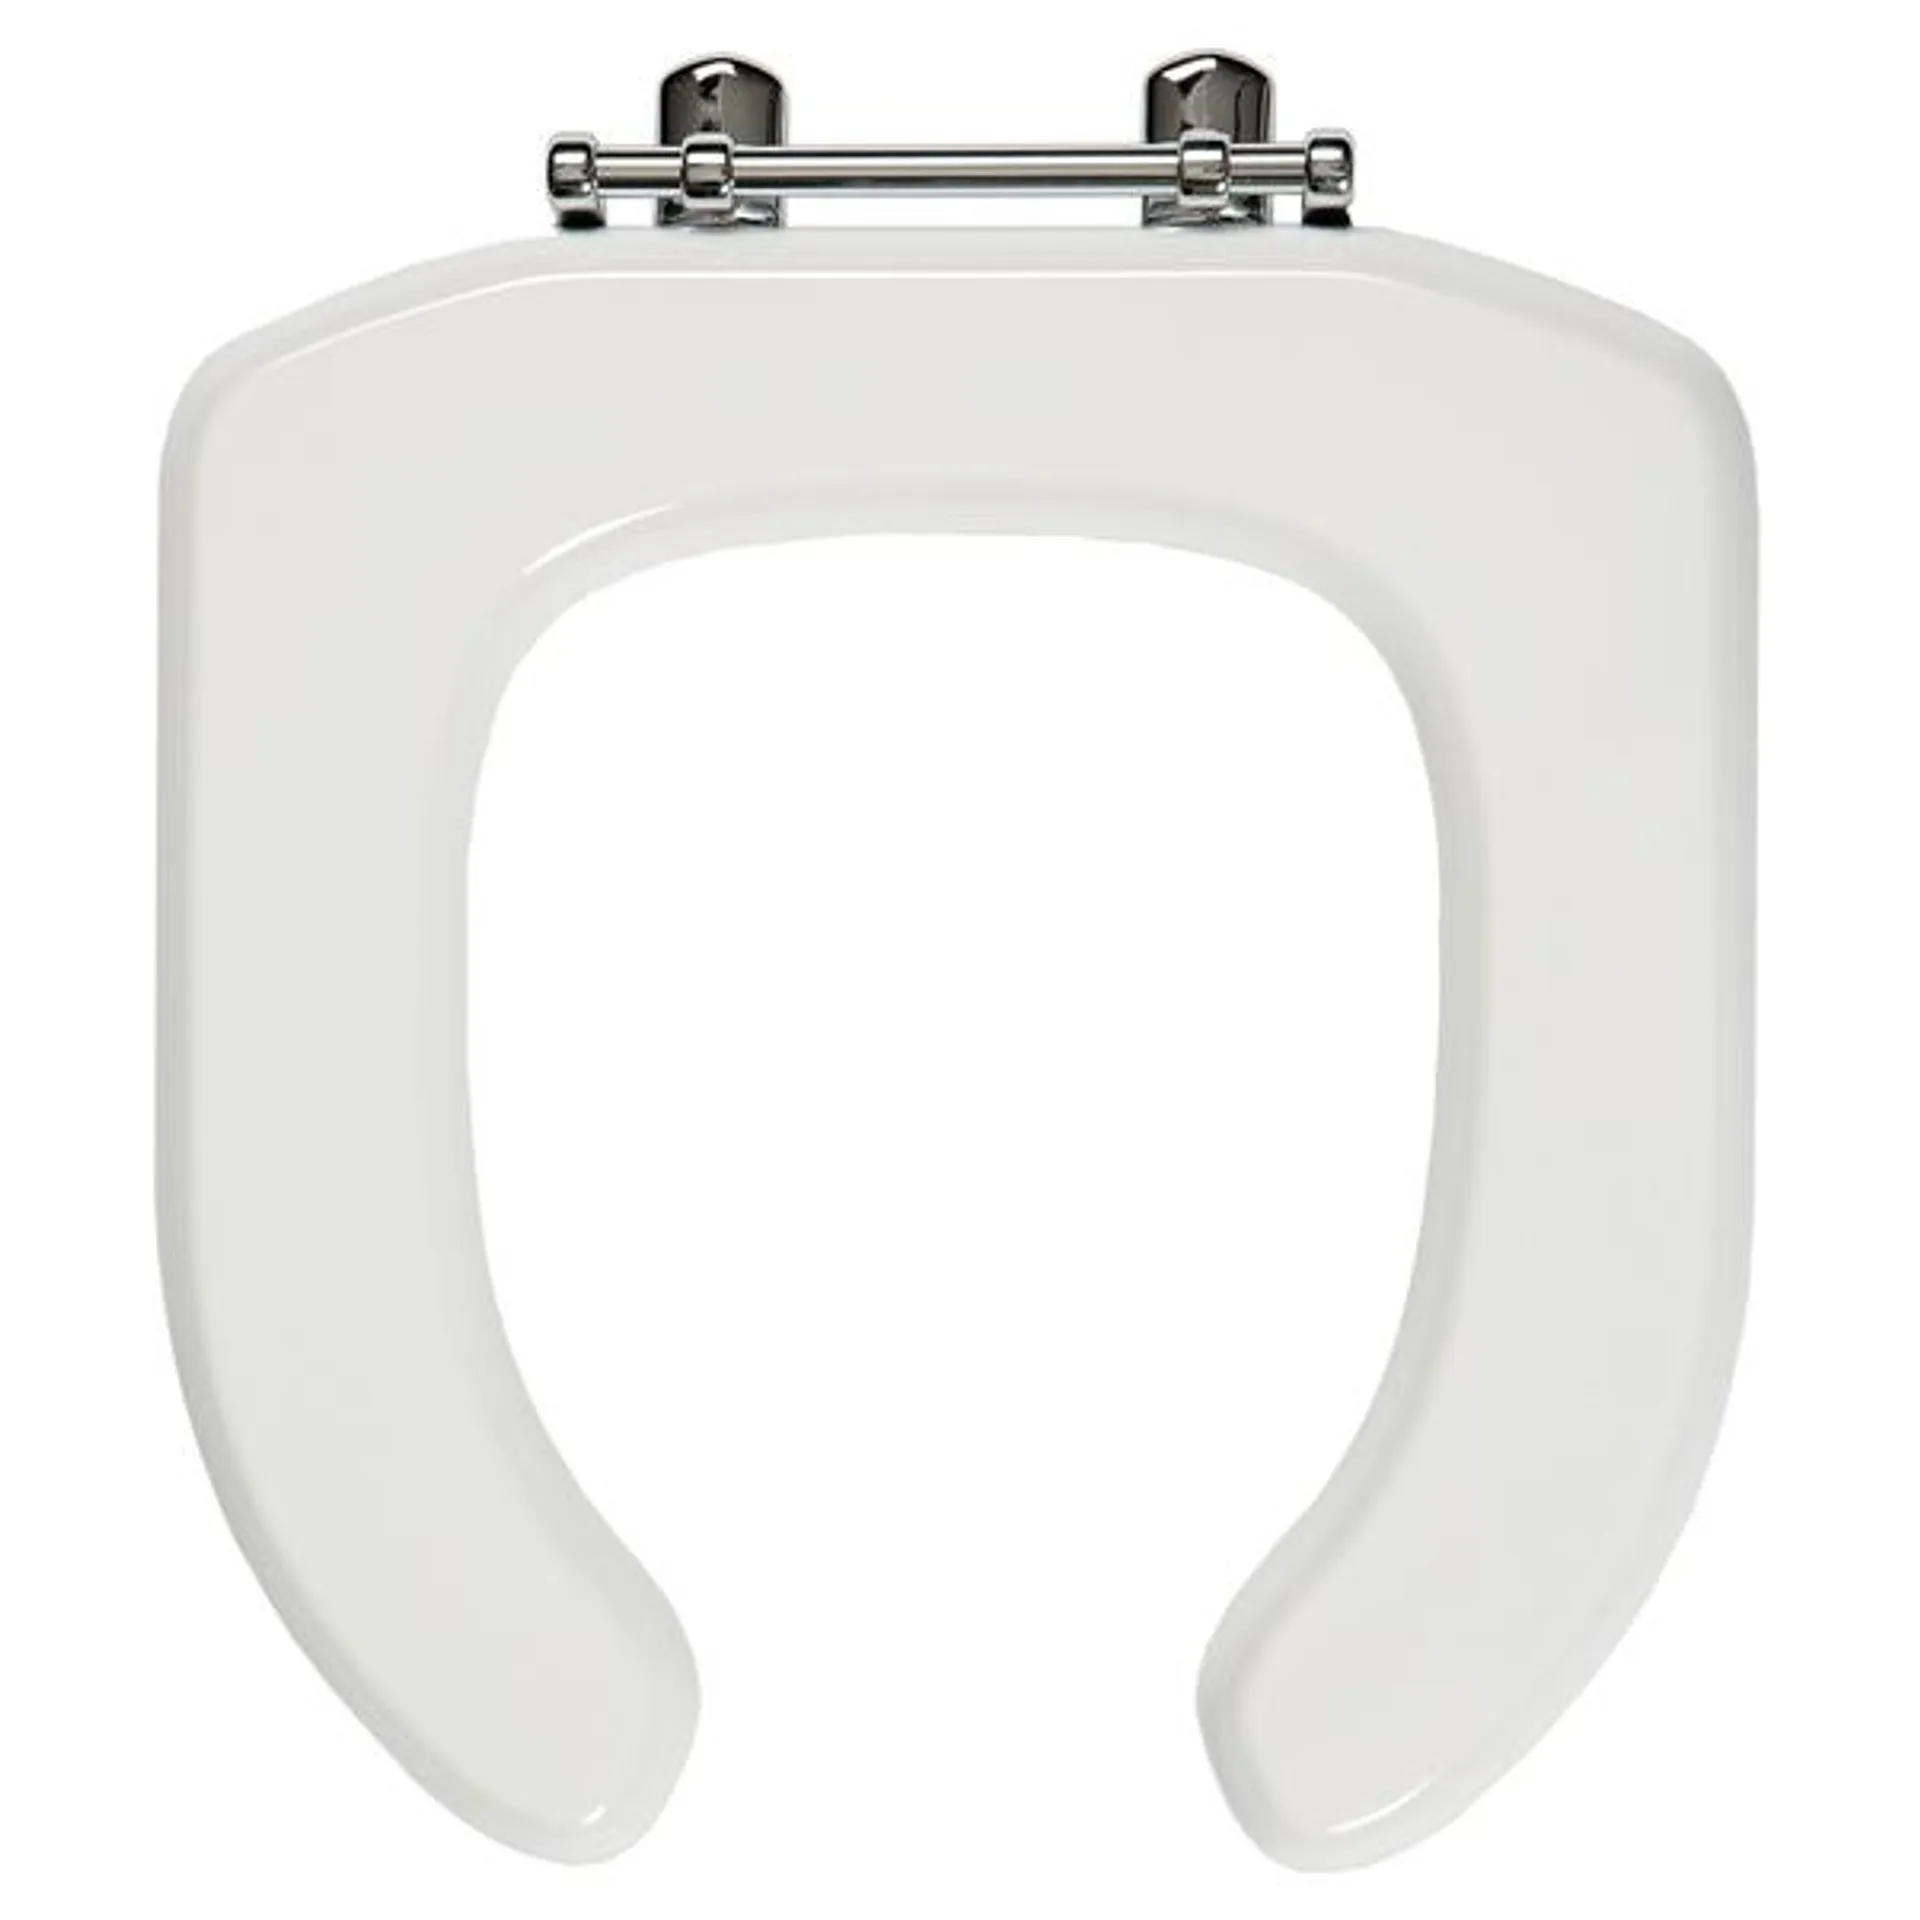 Copriwater universale ovale per disabili aperto con coperchio in mdf bianco cerniere in zama